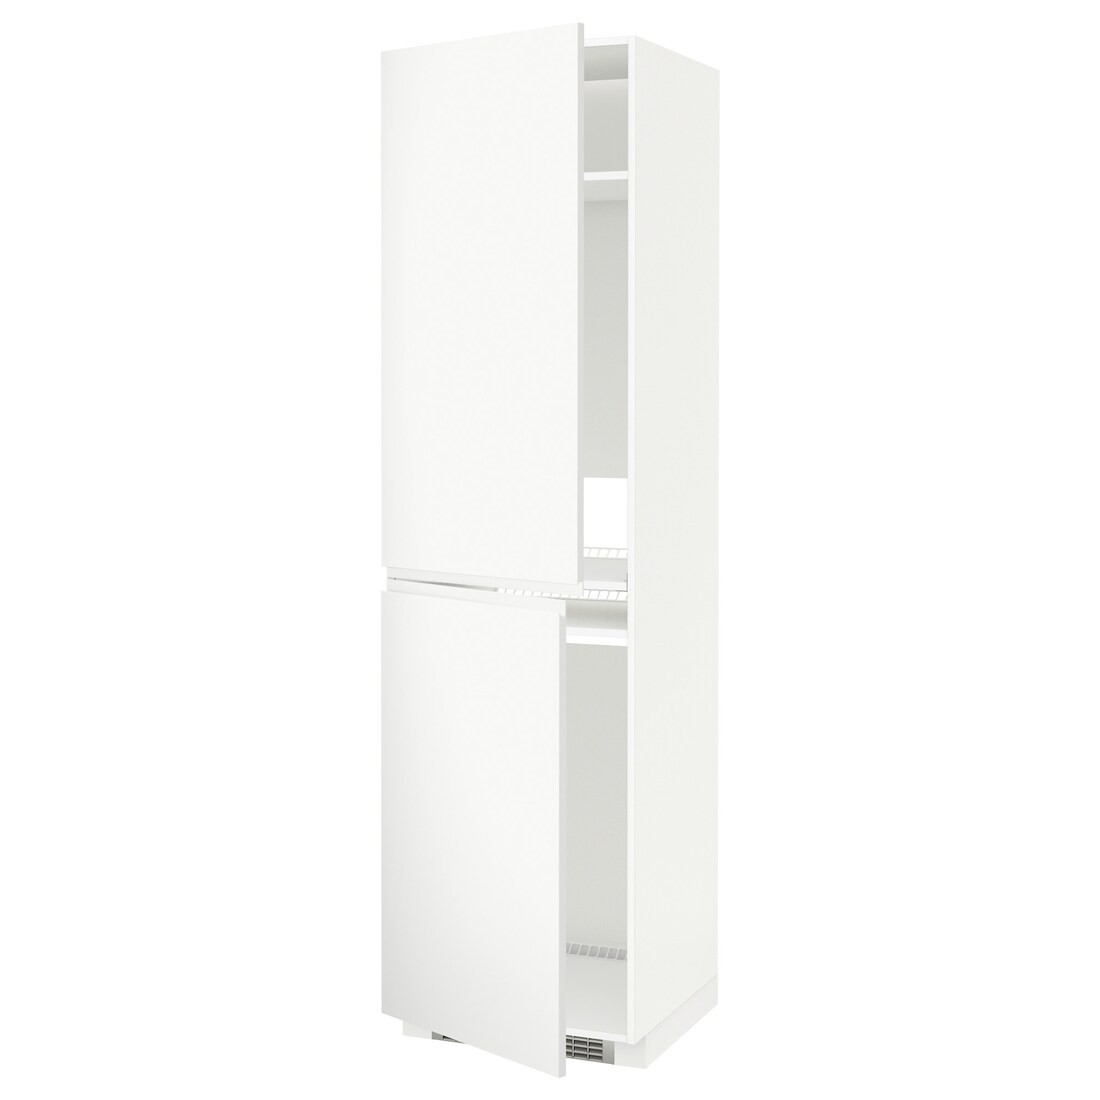 IKEA METOD МЕТОД Высокий шкаф для холодильника / морозильника, белый / Voxtorp матовый белый, 60x60x220 см 89111373 891.113.73